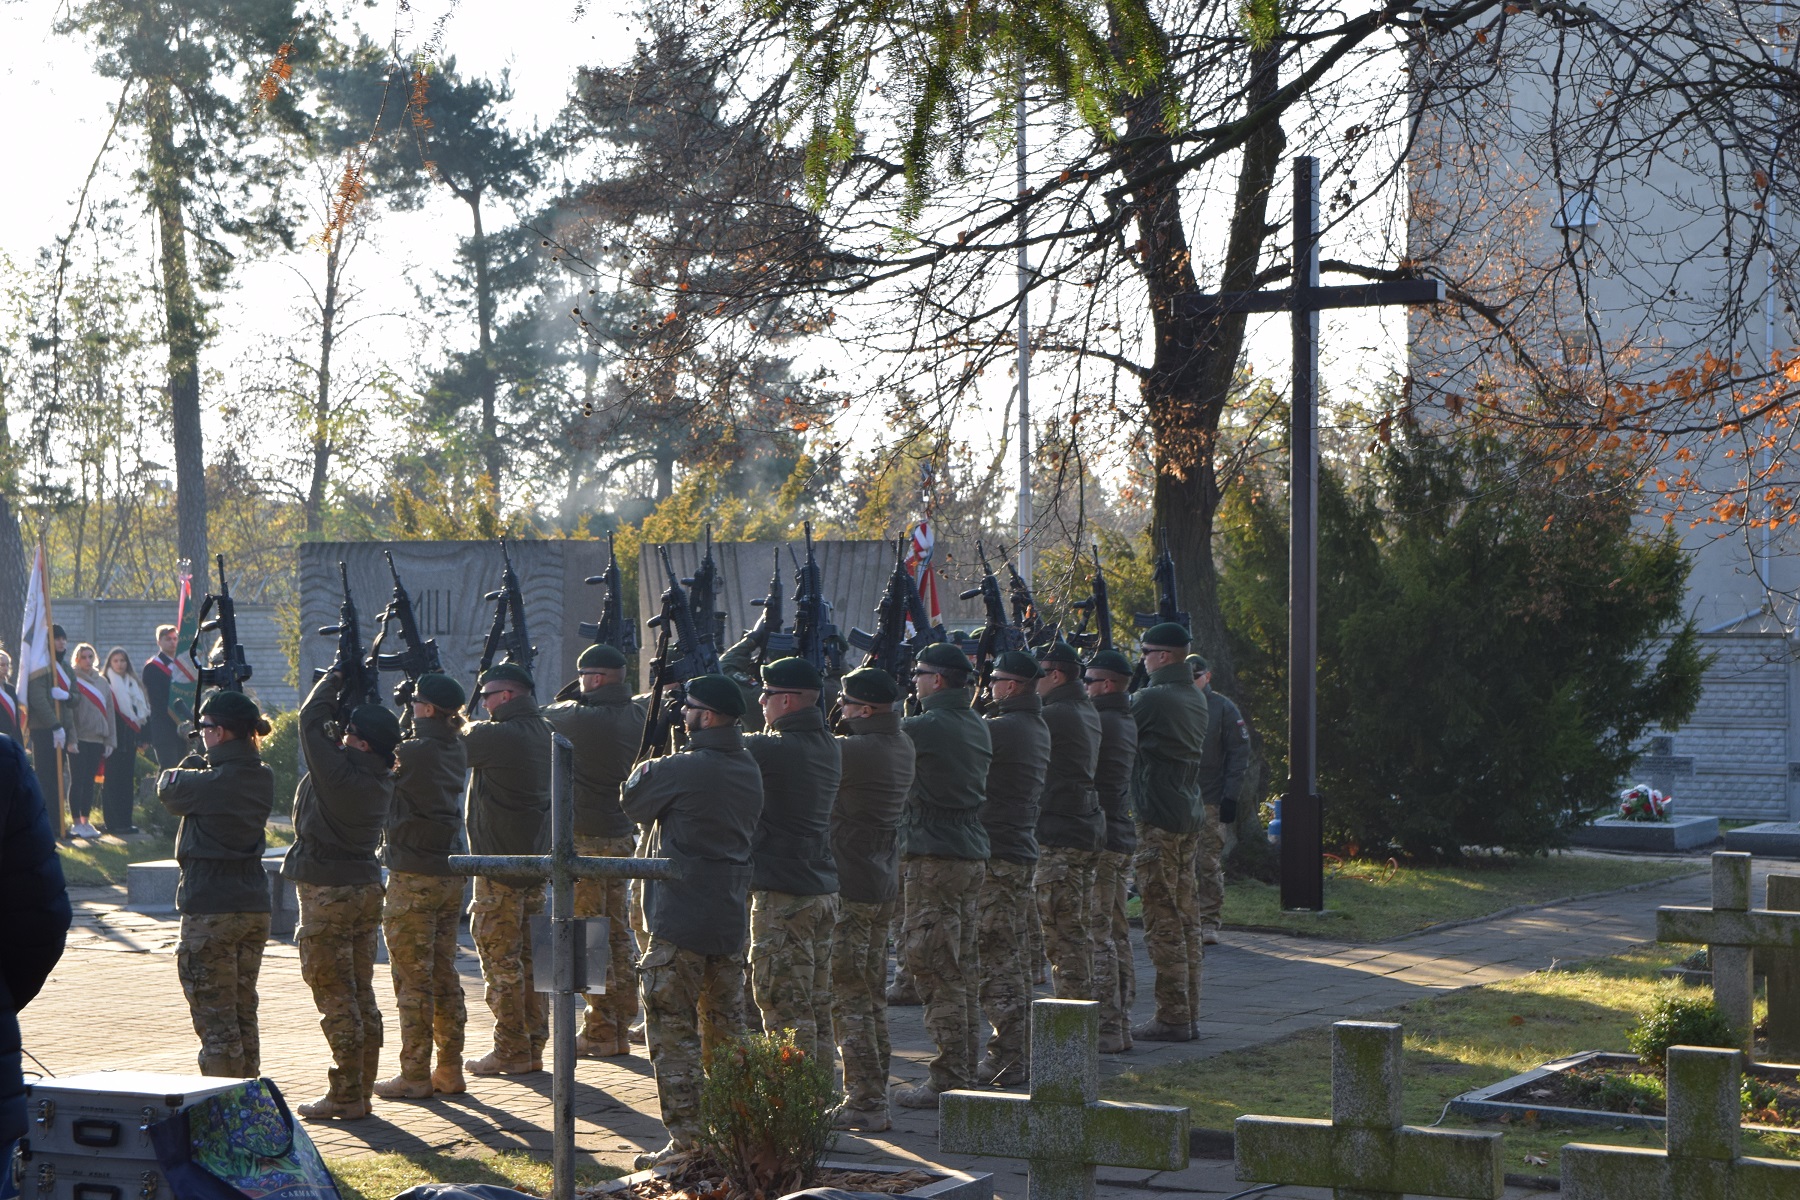 Uroczystość poświęcenia 17 grobów żołnierzy Wojska Polskiego w ramach obchodów Narodowego Święta Niepodległości w Lublińcu. Fot. Jan Kwaśniewicz/IPN